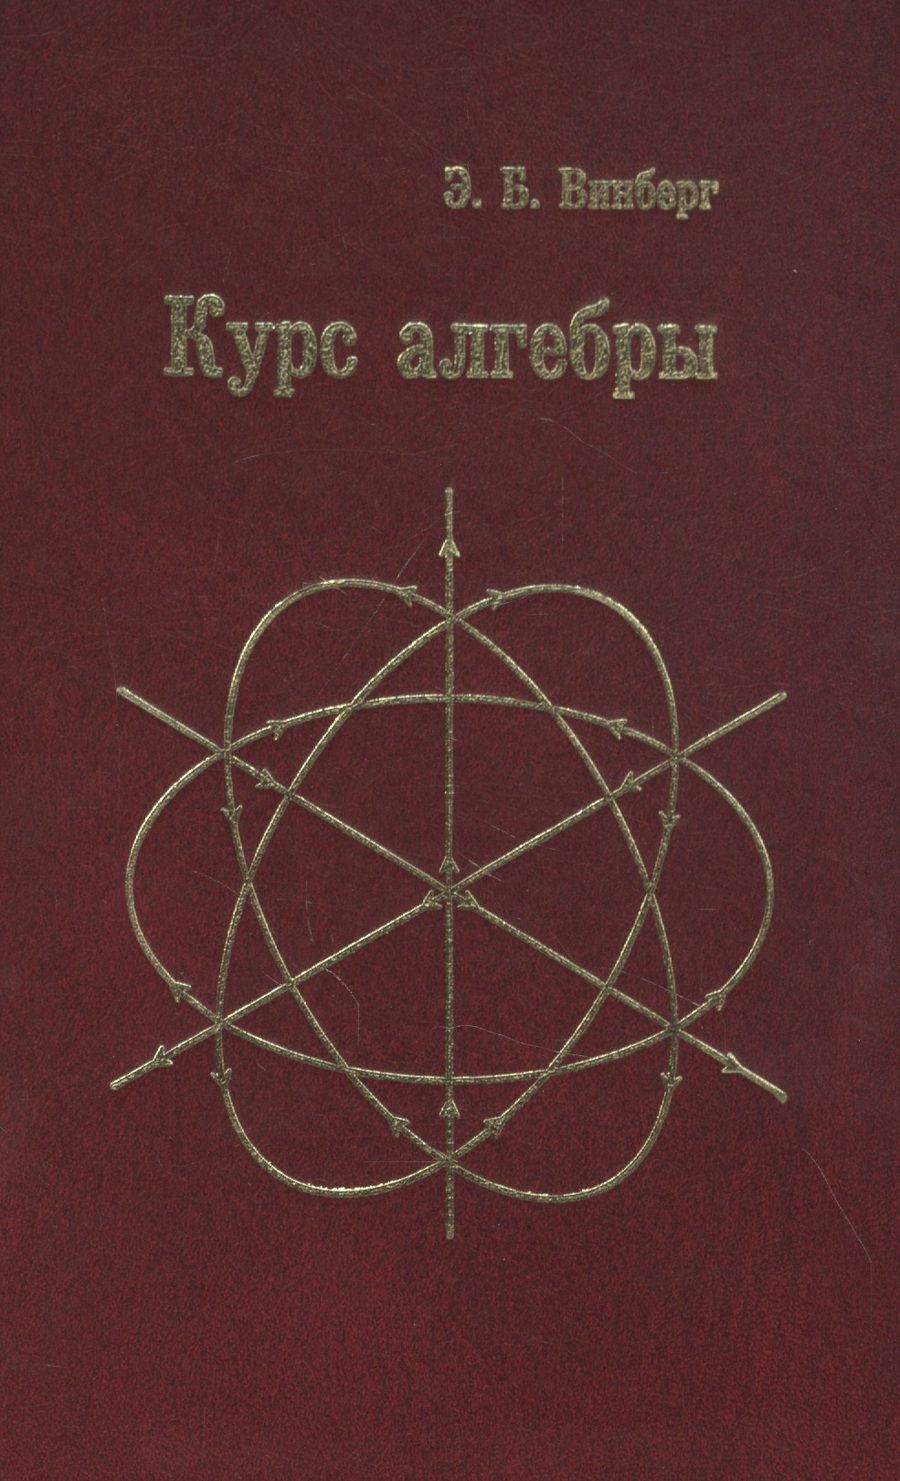 Обложка книги "Эрнест Винберг: Курс алгебры"